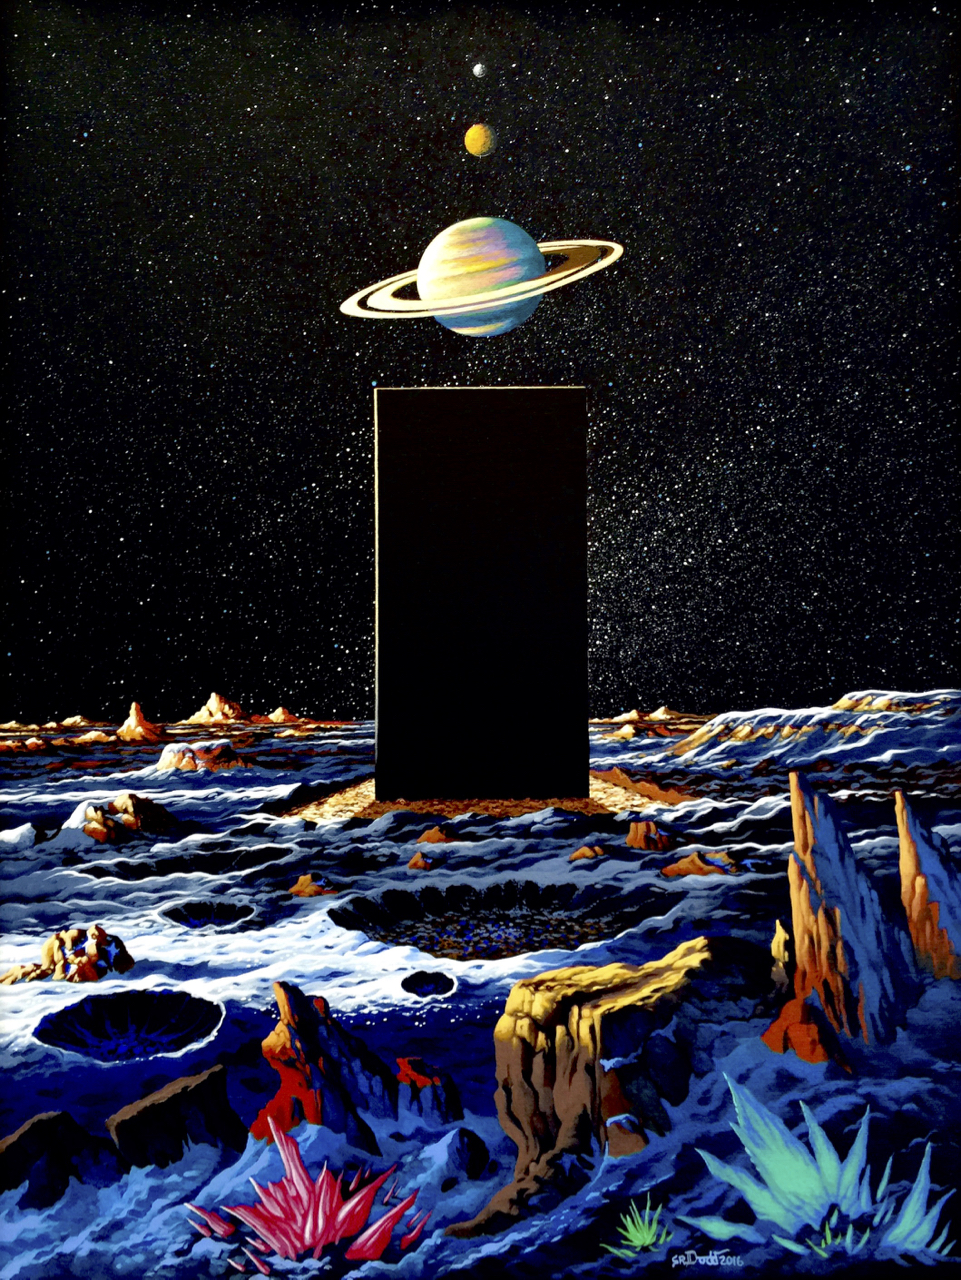 2001: A Space Odyssey novel artwork by Steve Dodd